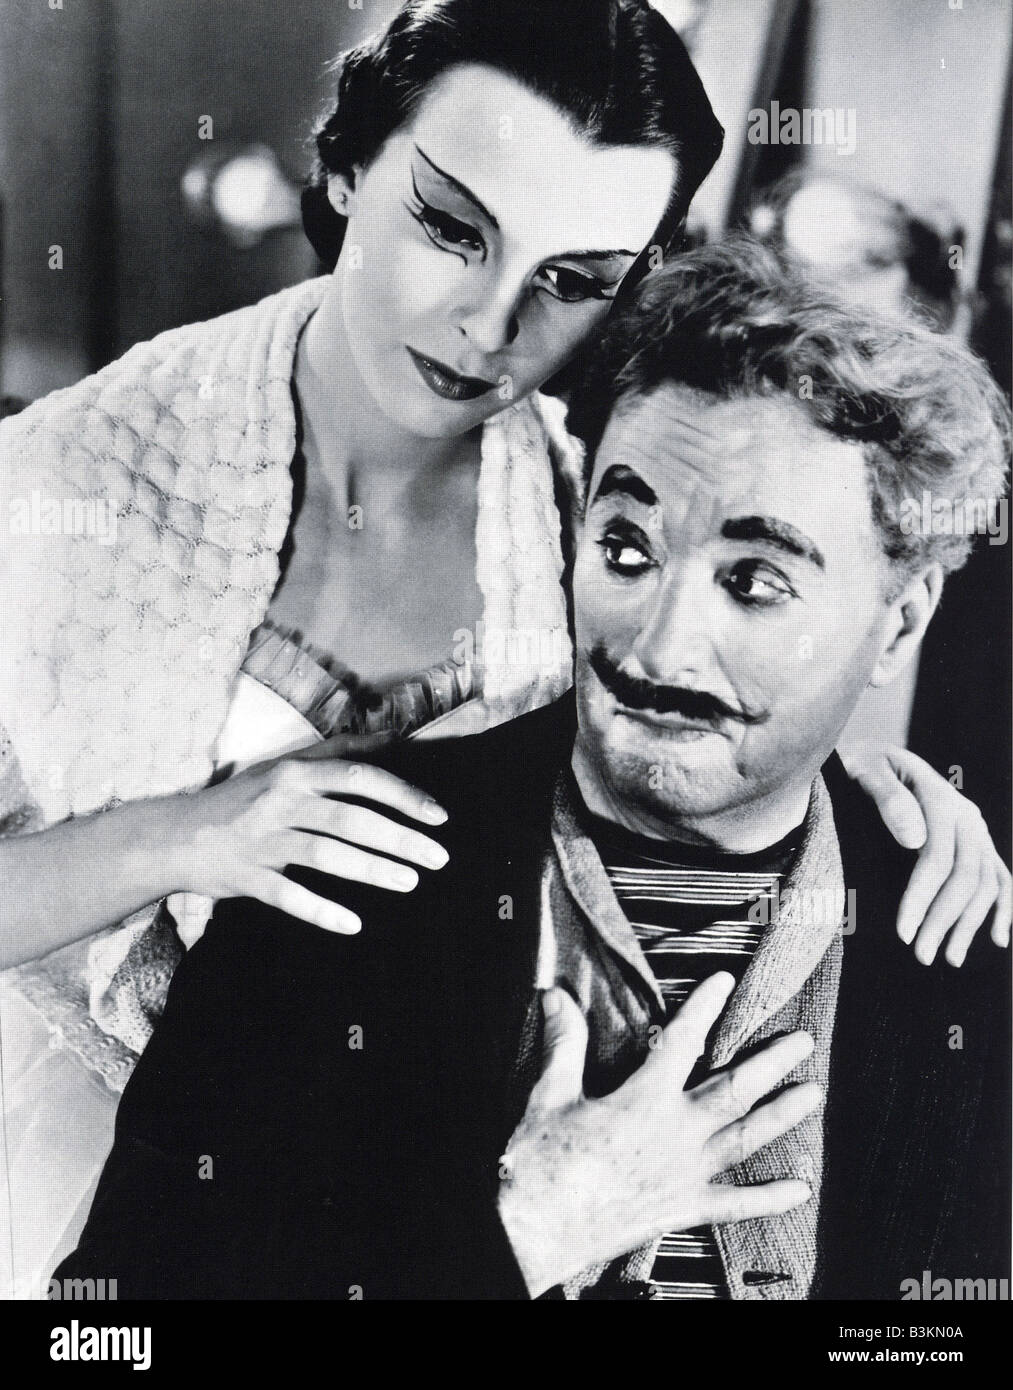 Vedette film de 1952 avec Charles Chaplin et Claire Bloom Banque D'Images